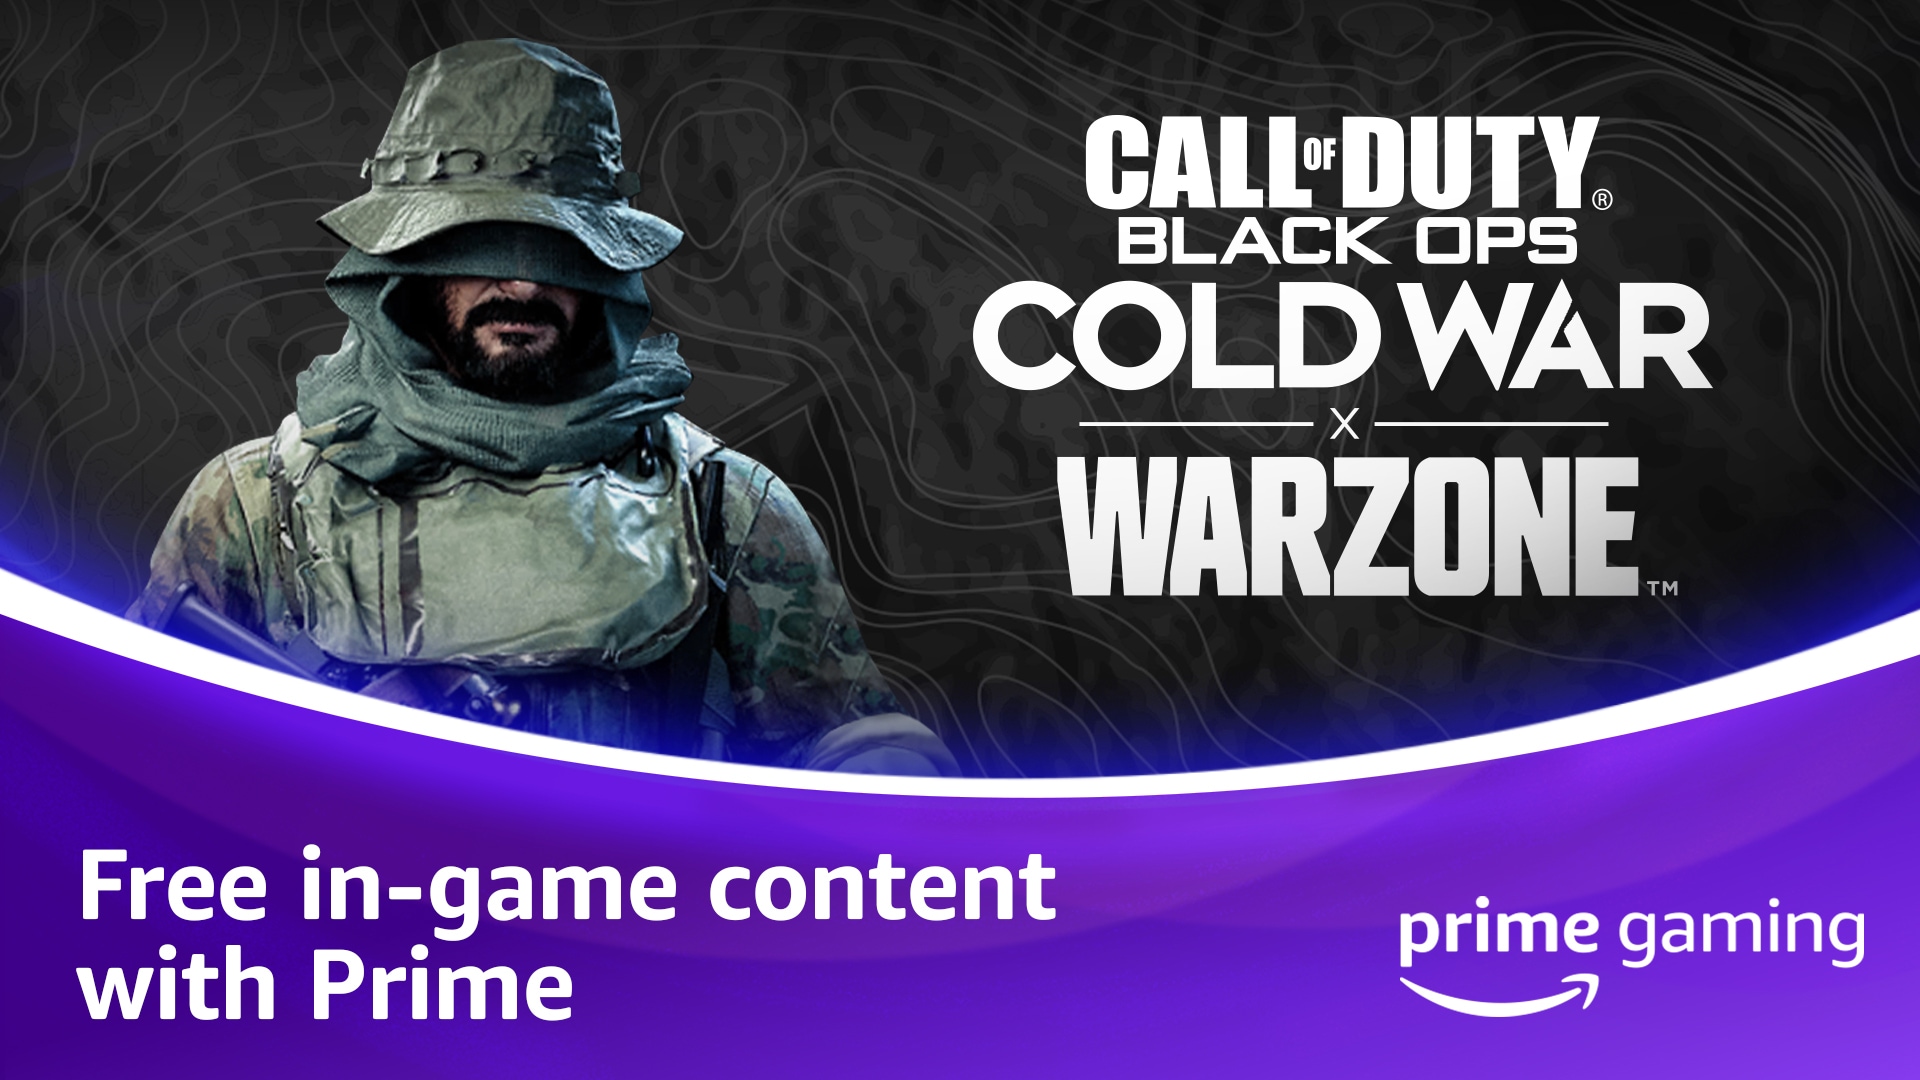 Os presentamos las recompensas para los miembros de Prime de Call of Duty®: Black Ops Cold War, Warzone™ y Mobile de Prime Gaming